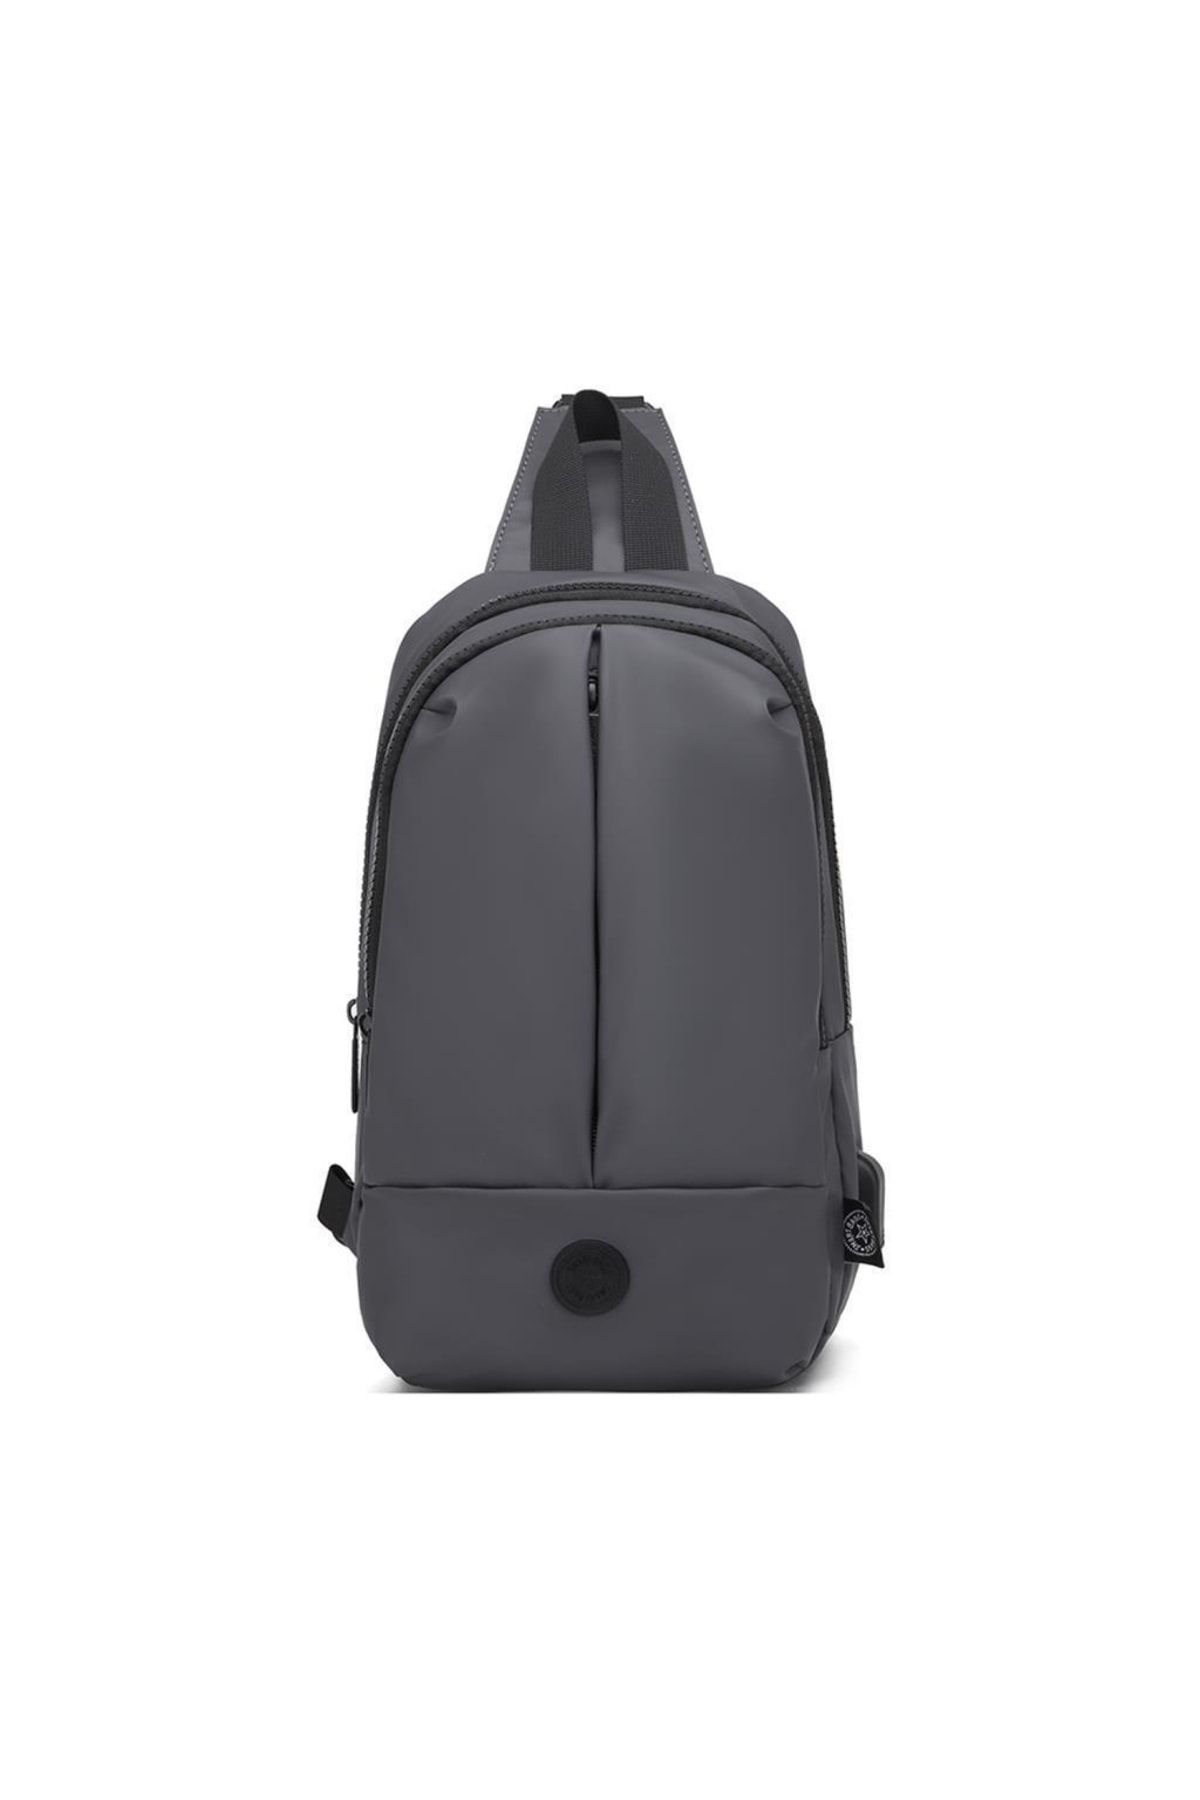 Smart Bags Gumi Kumaş Uniseks Bodybag Omuz Çantası 8655 K.gri